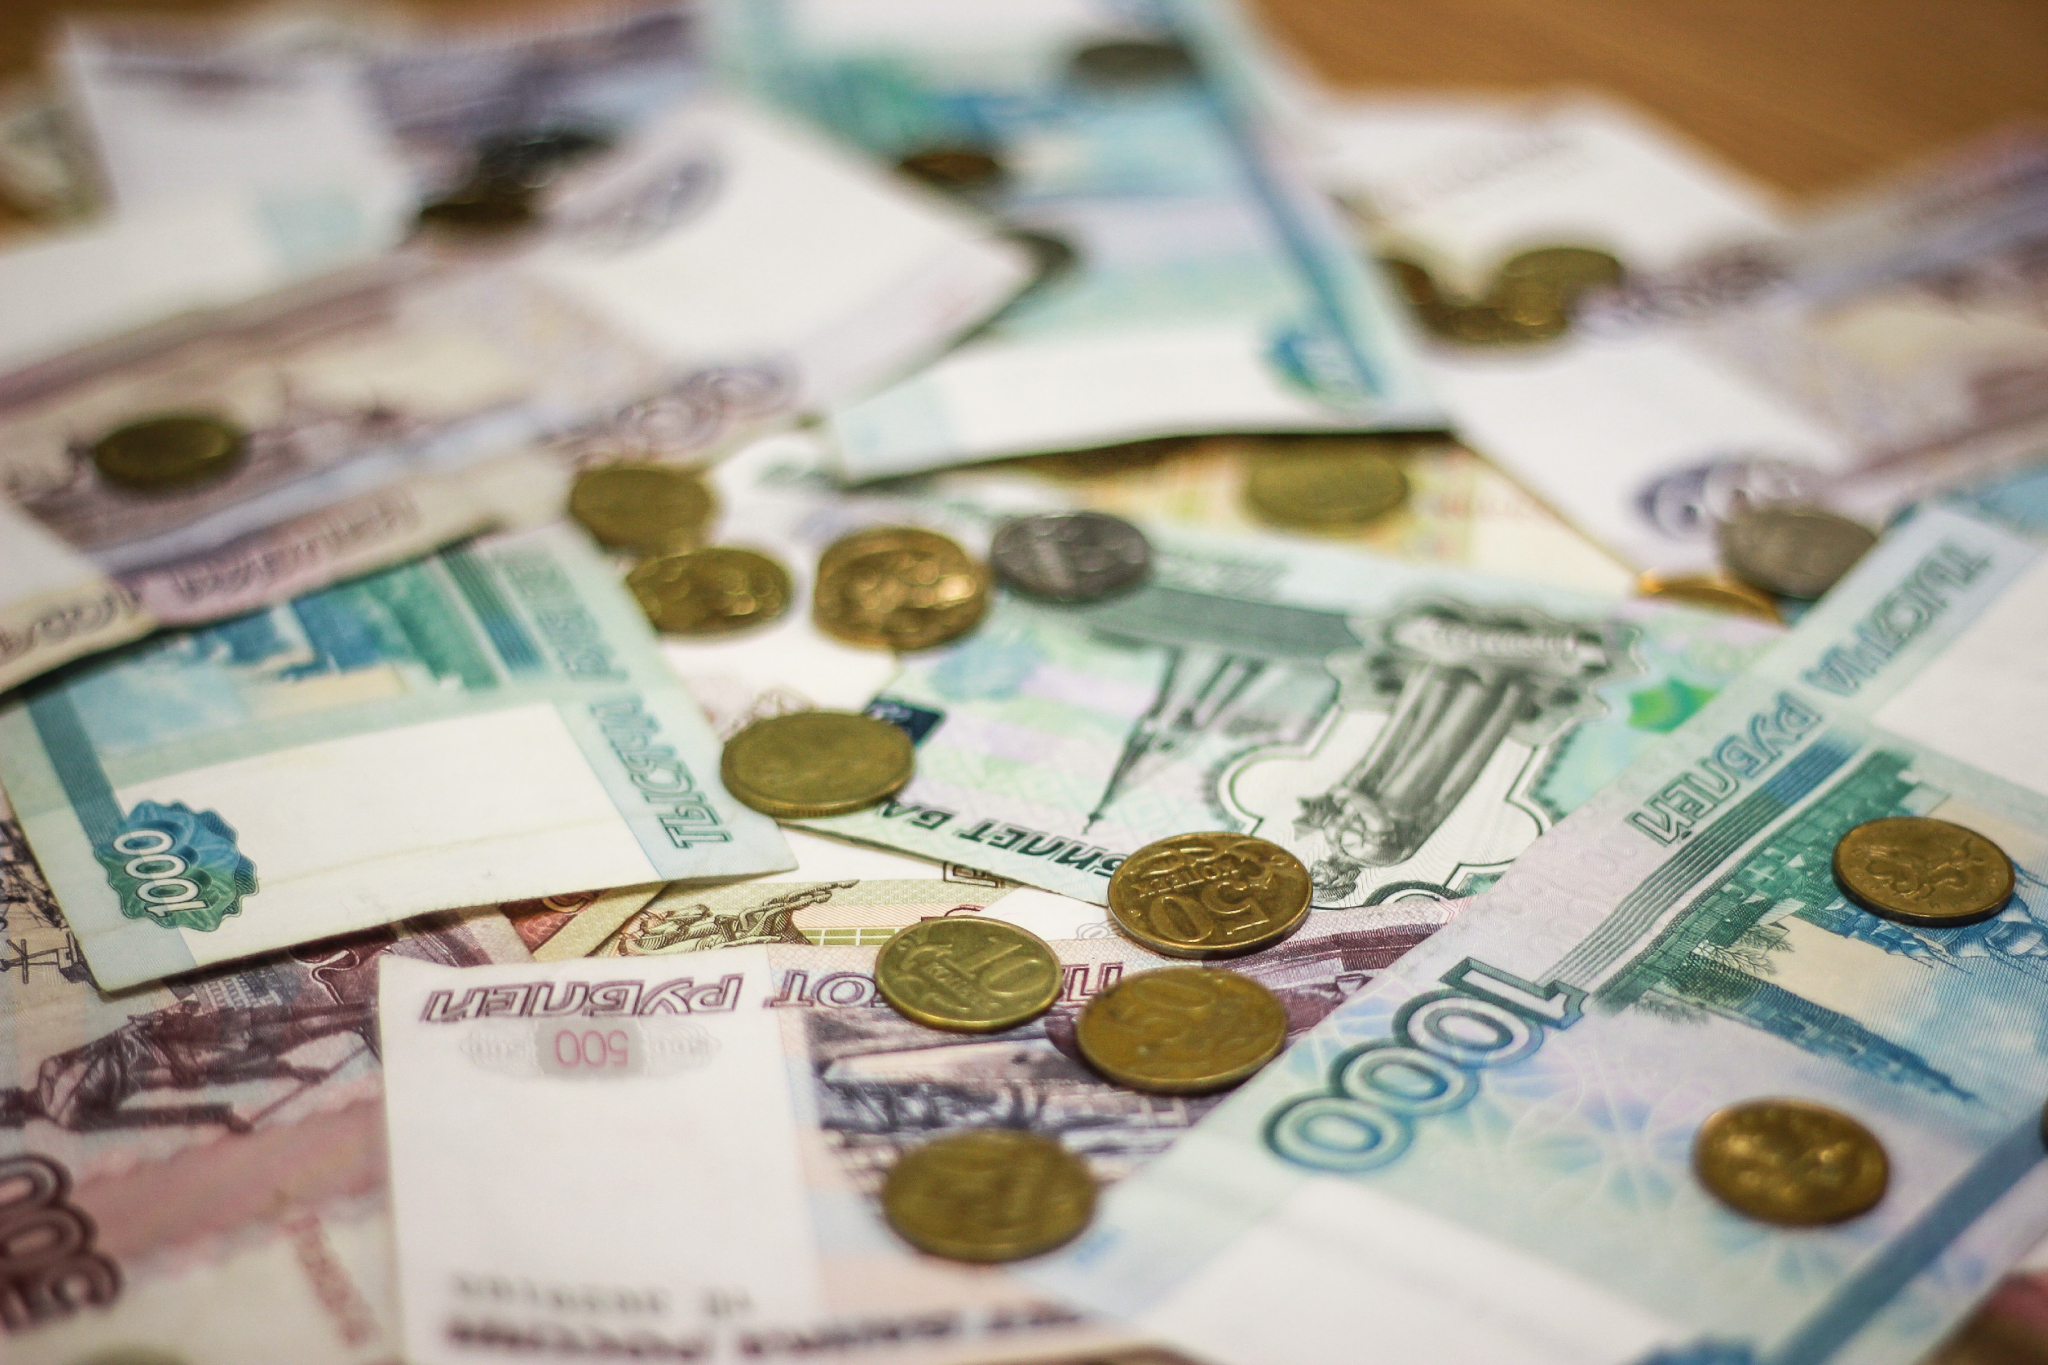 Жительница Мордовии лишилась 185 тысяч рублей, пытаясь продать дом